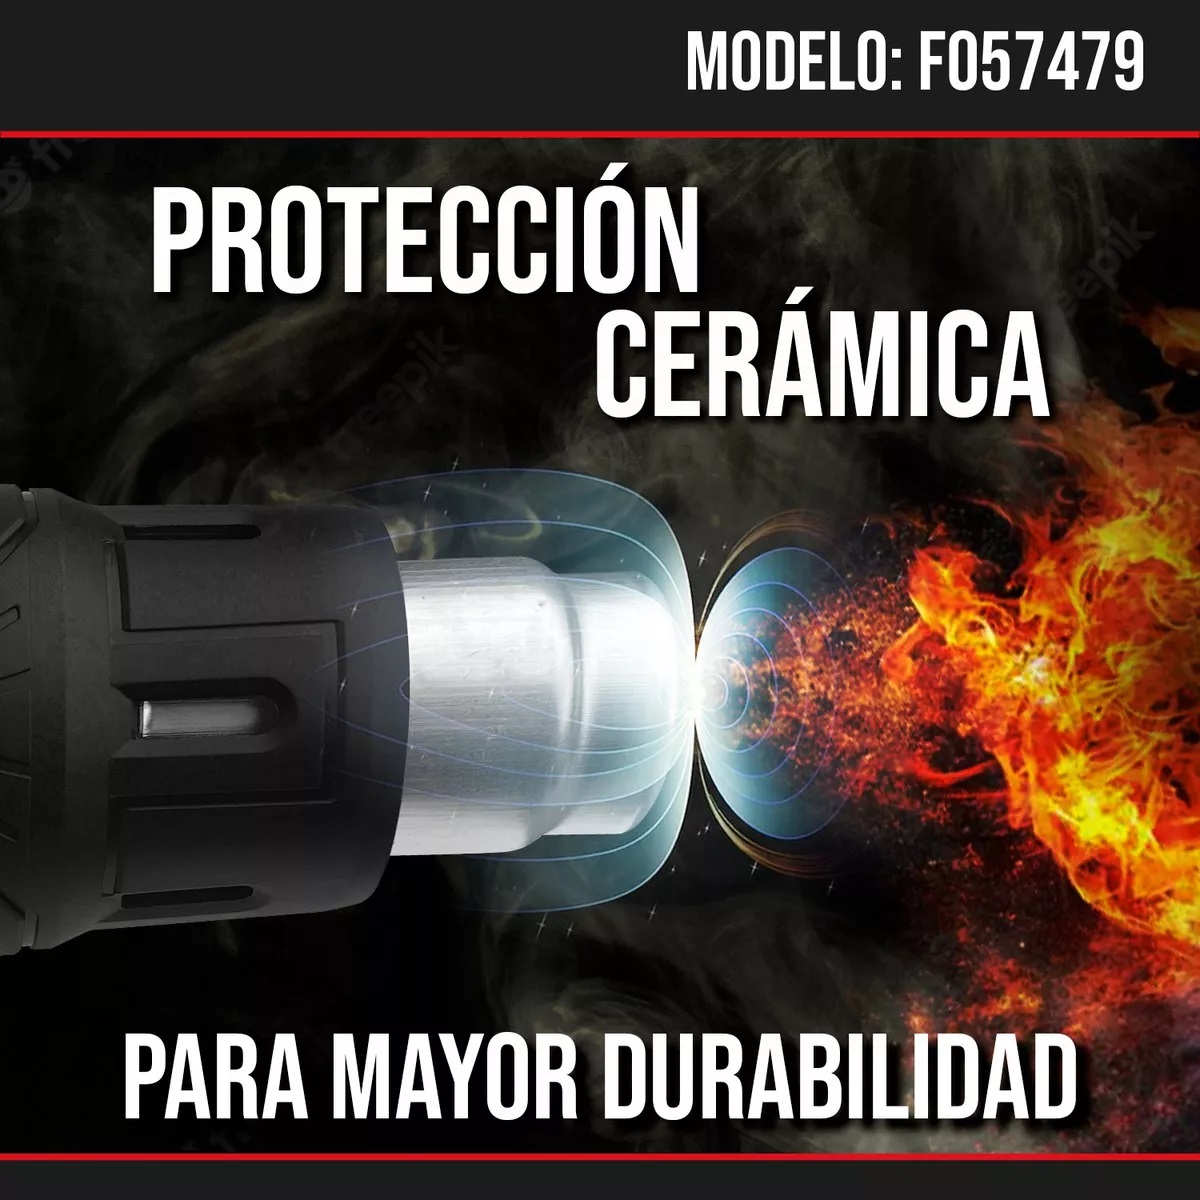 Pistola de Calor 2000W Marca: Hoteche